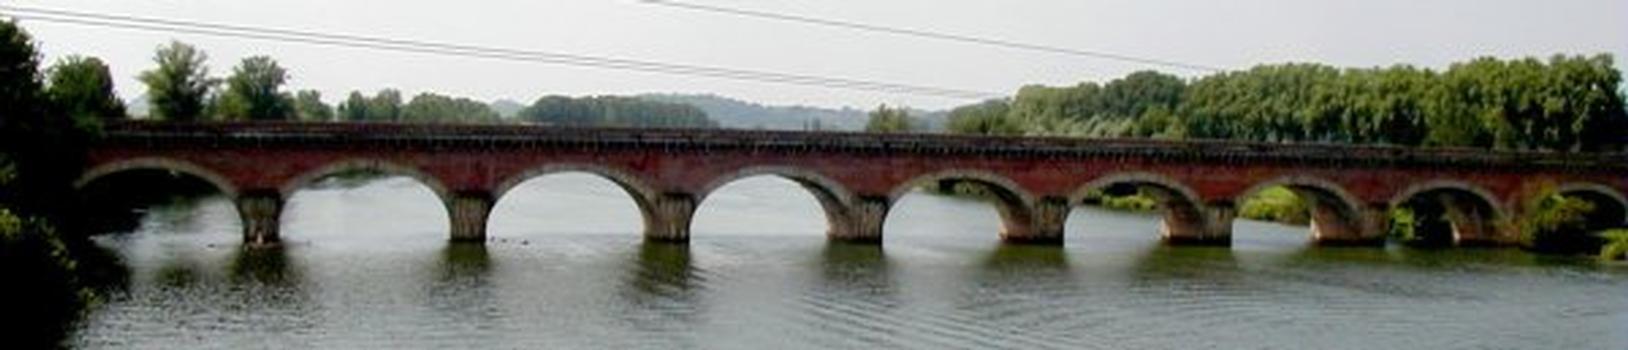 Pont-canal de Cacor à Moissac